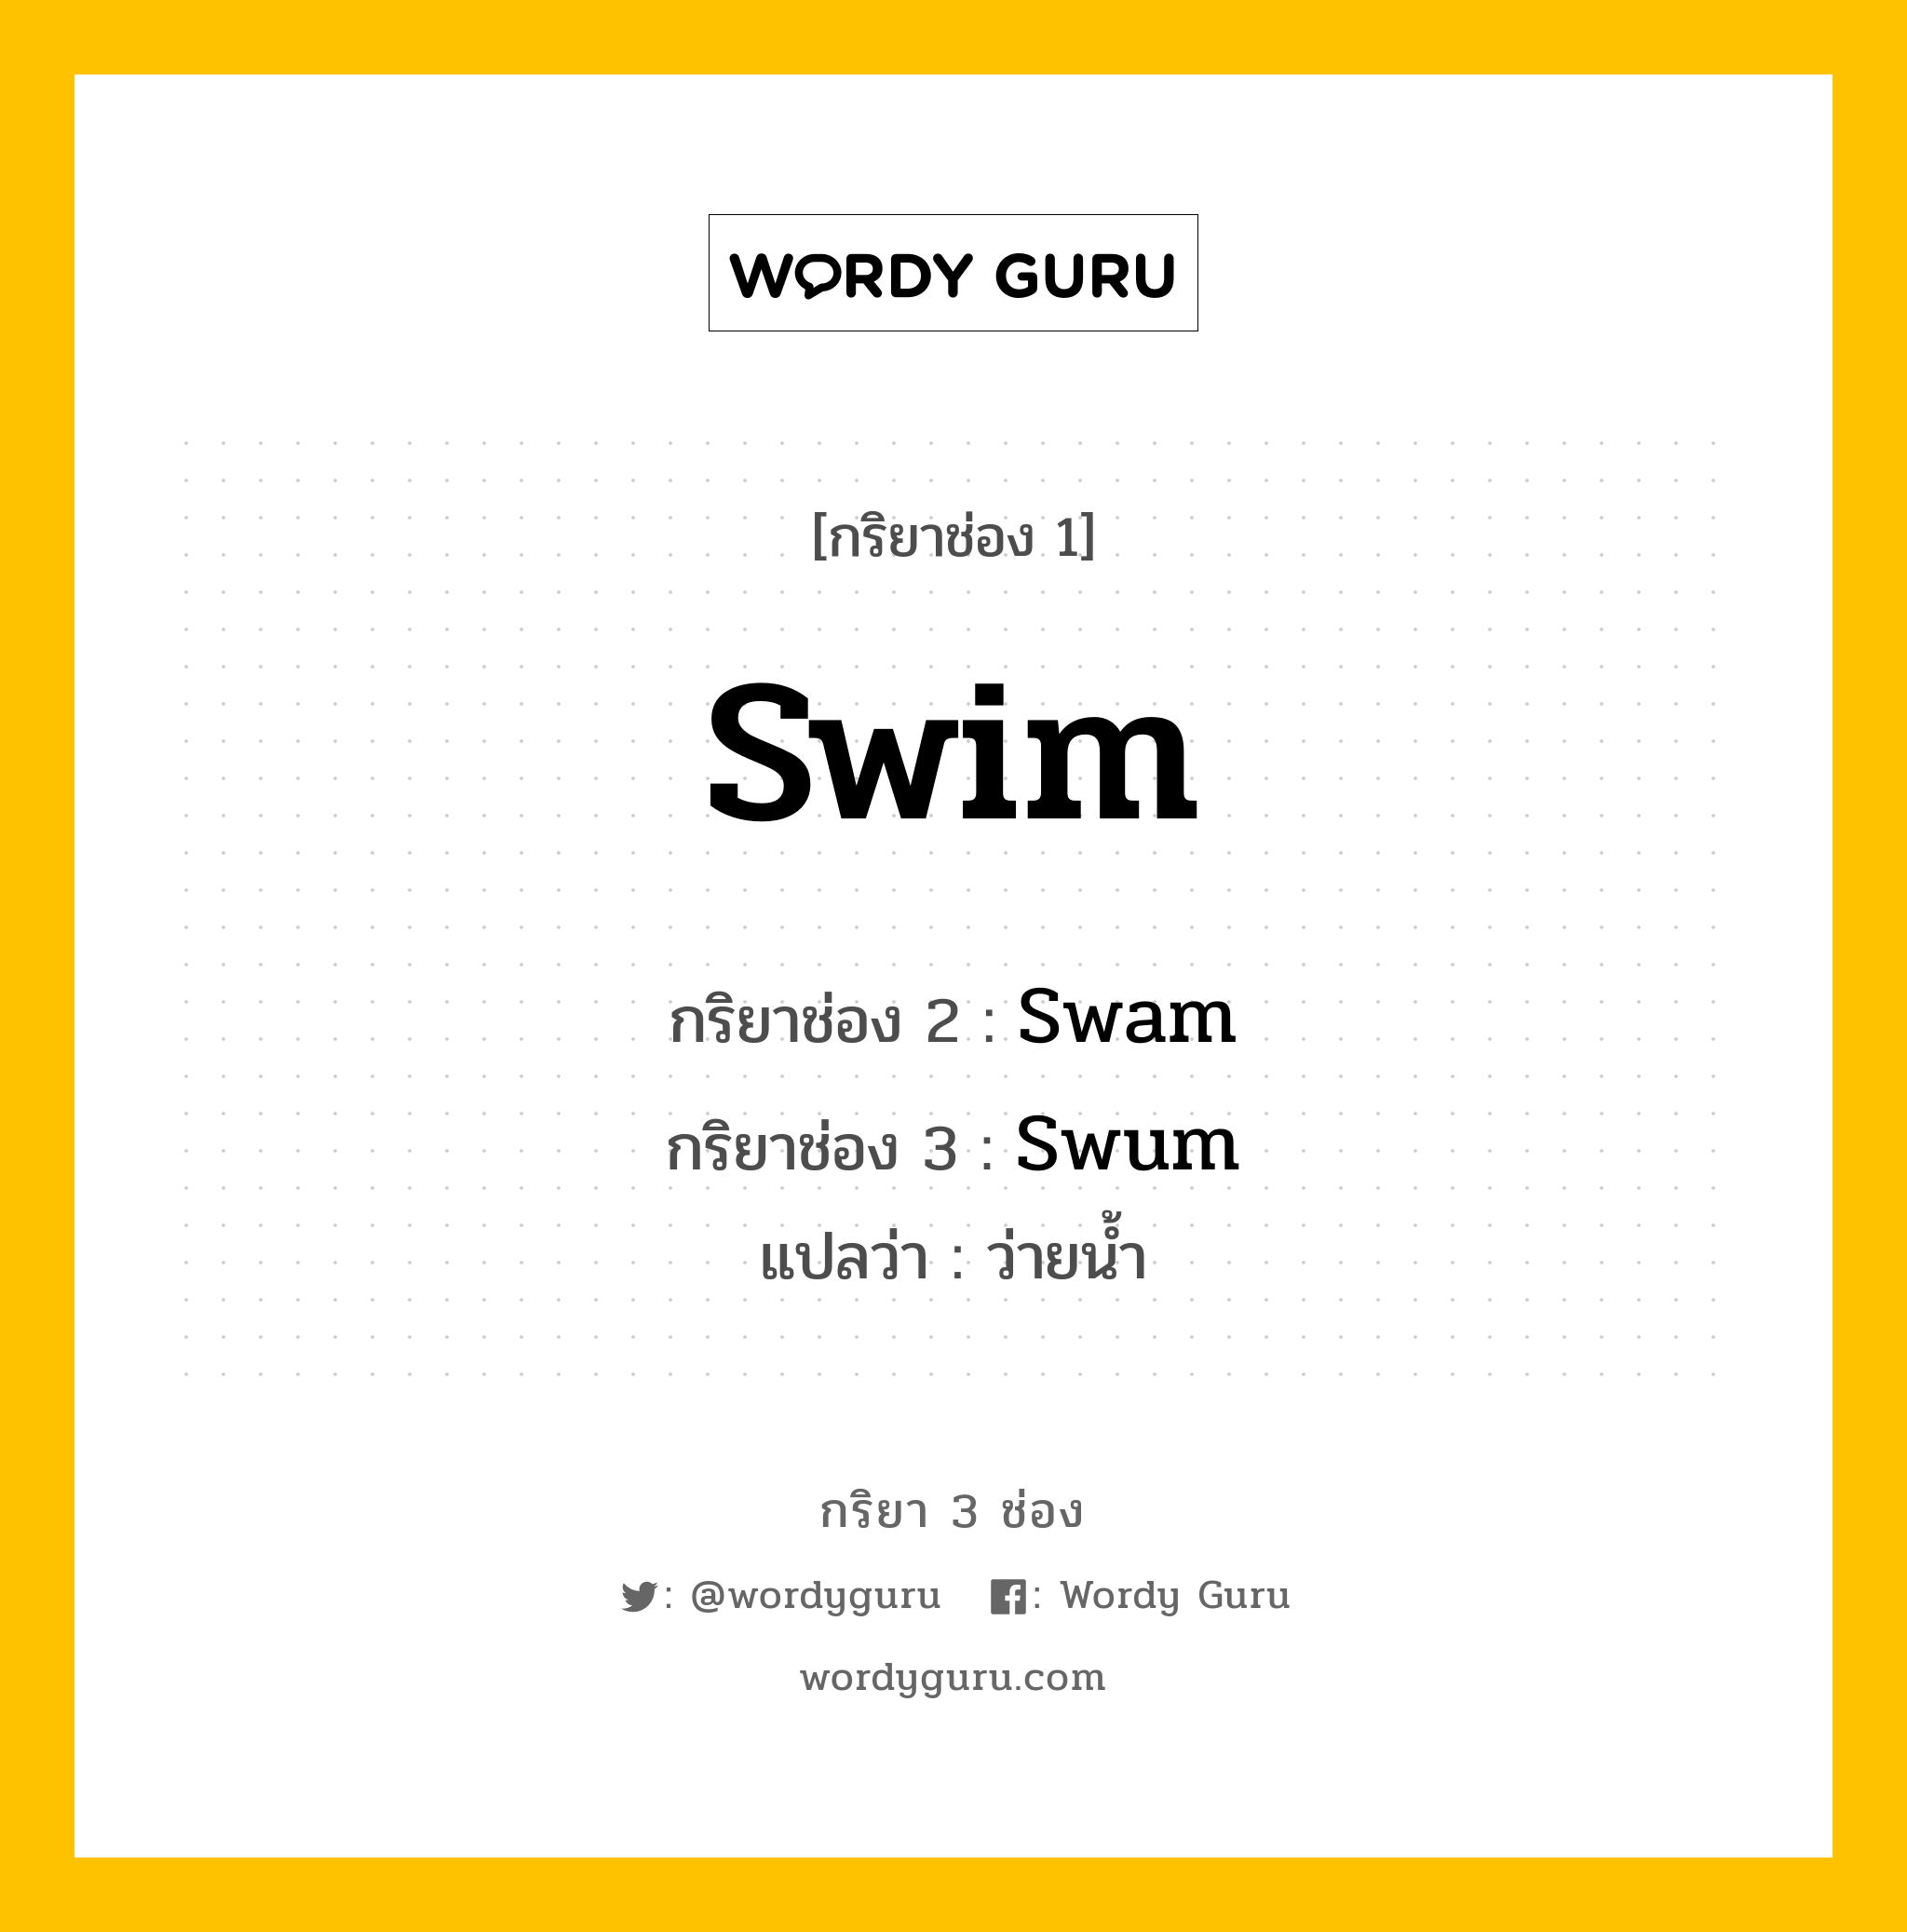 กริยา 3 ช่อง: Swim ช่อง 2 Swim ช่อง 3 คืออะไร, กริยาช่อง 1 Swim กริยาช่อง 2 Swam กริยาช่อง 3 Swum แปลว่า ว่ายน้ำ หมวด Irregular Verb